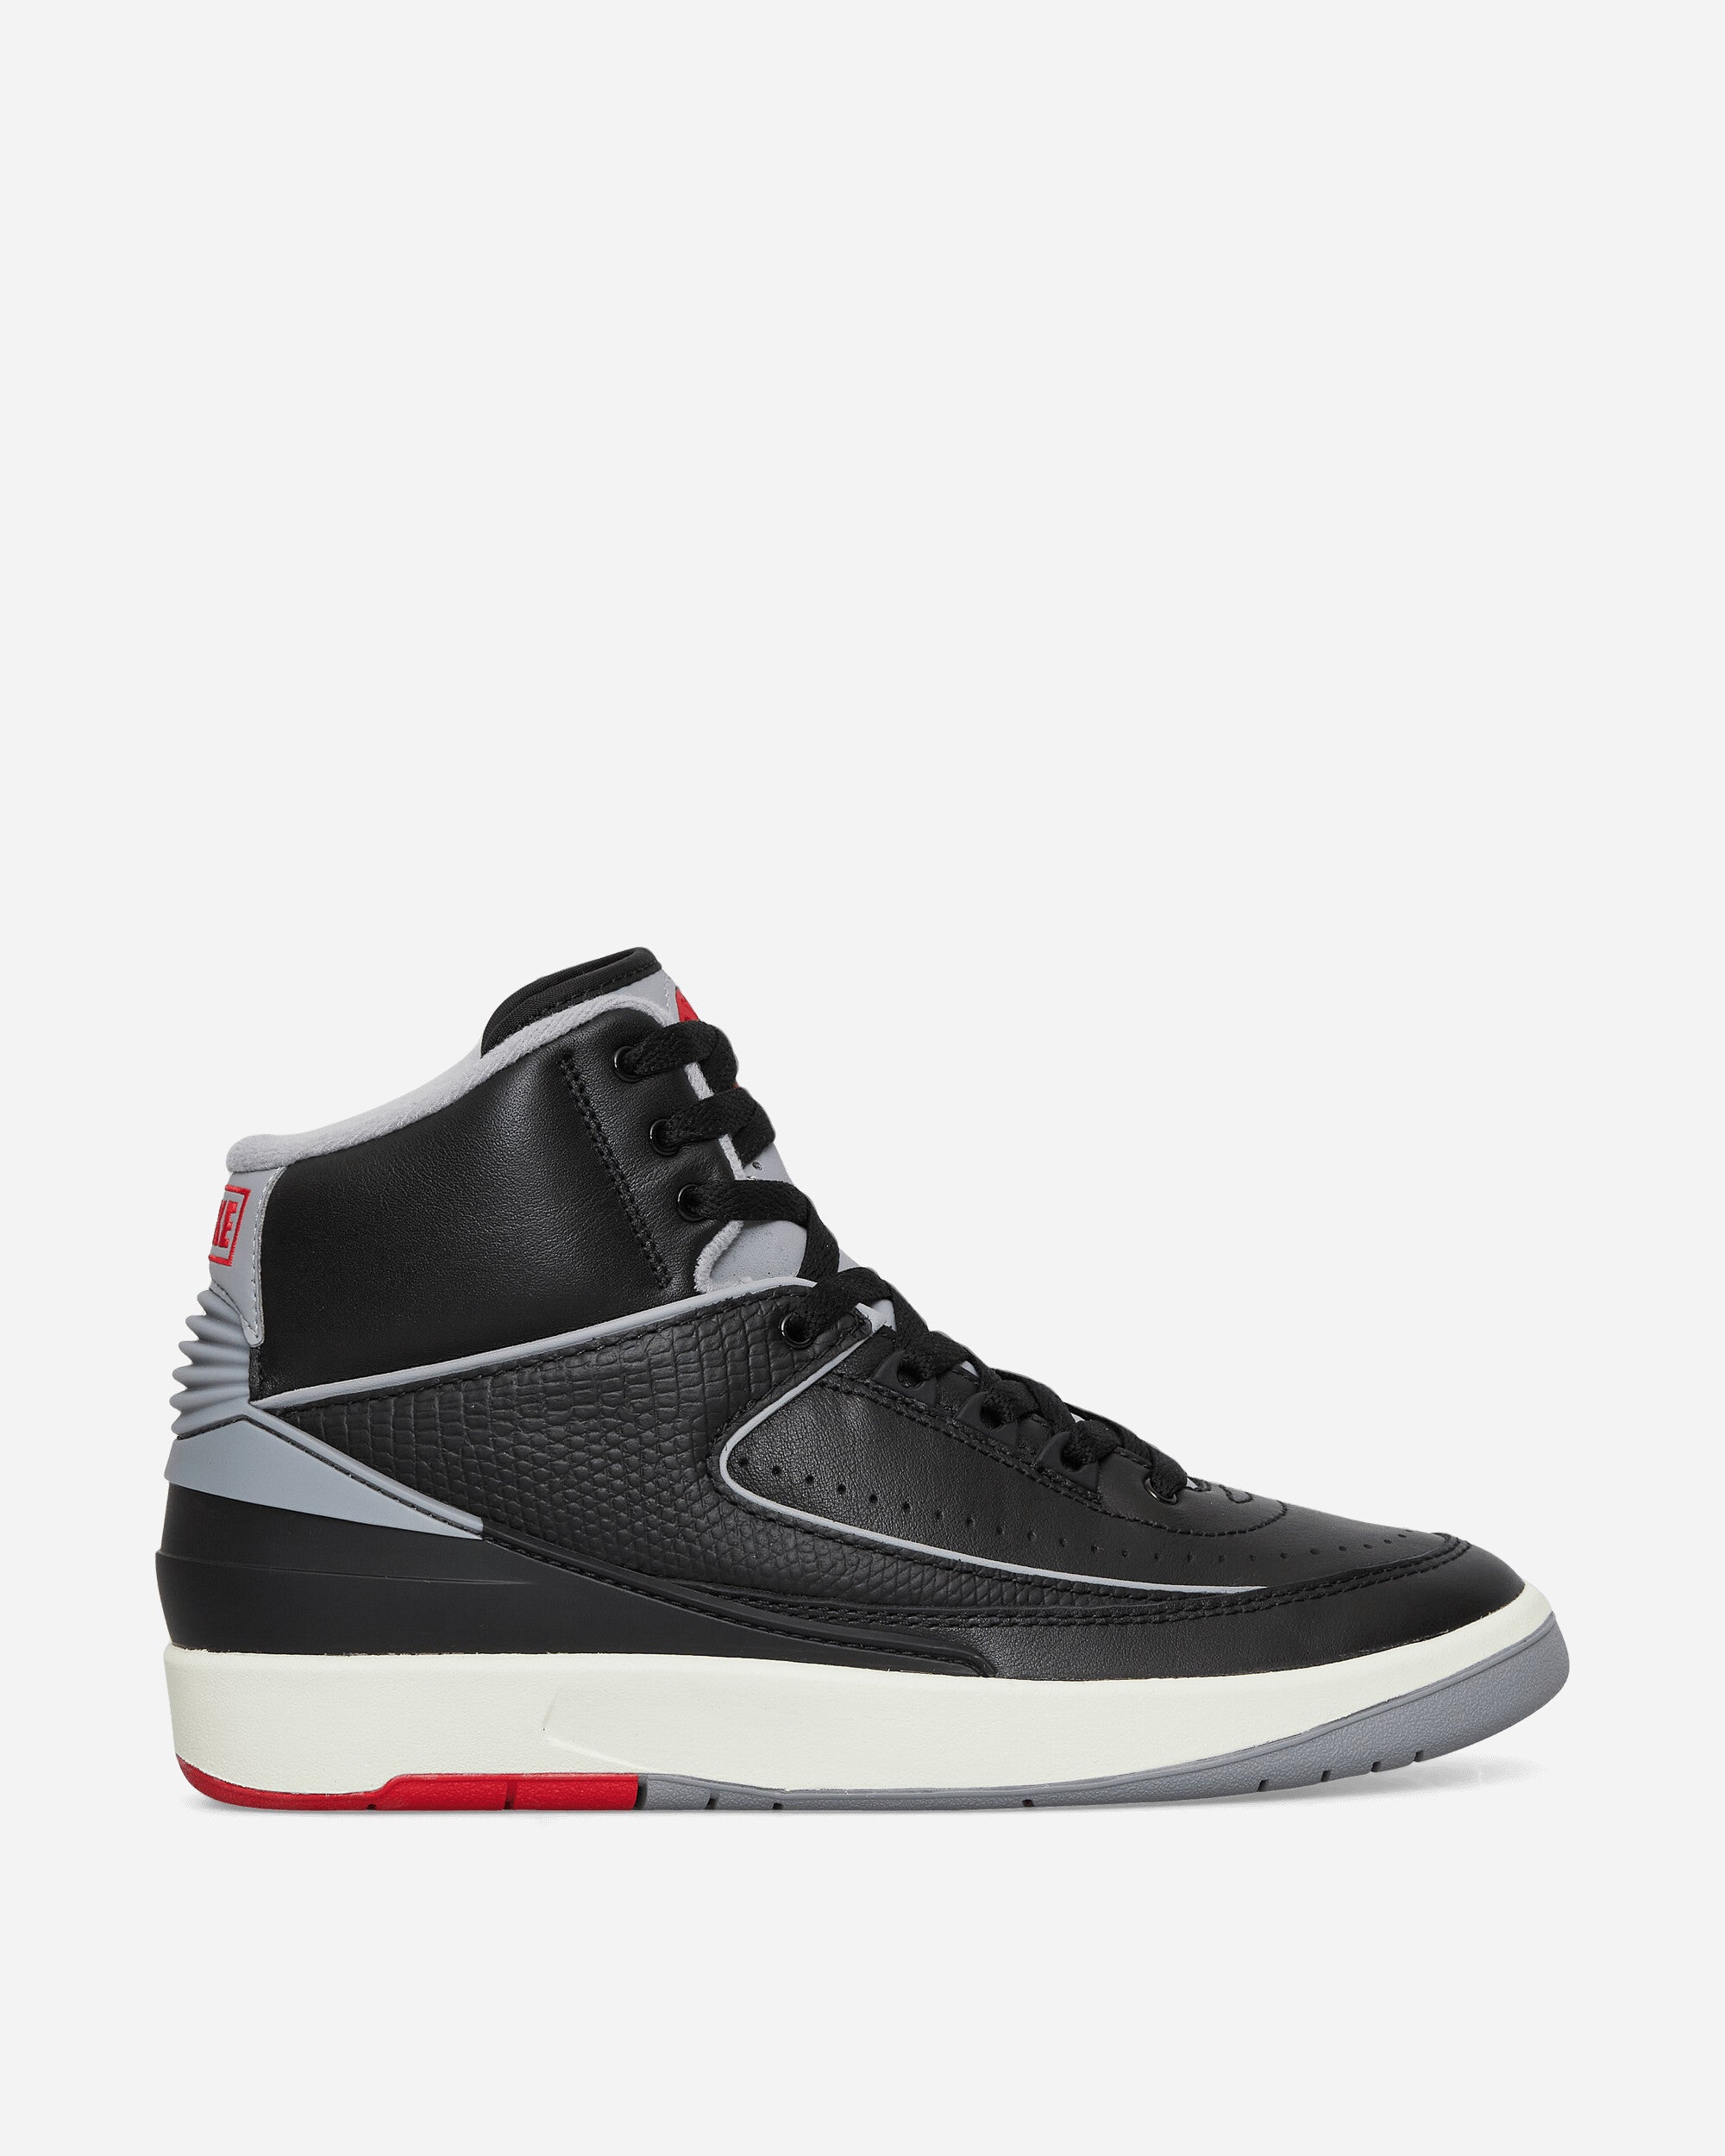 Nike Jordan Air Jordan 2 Retro Sneakers Black / Cement Grey